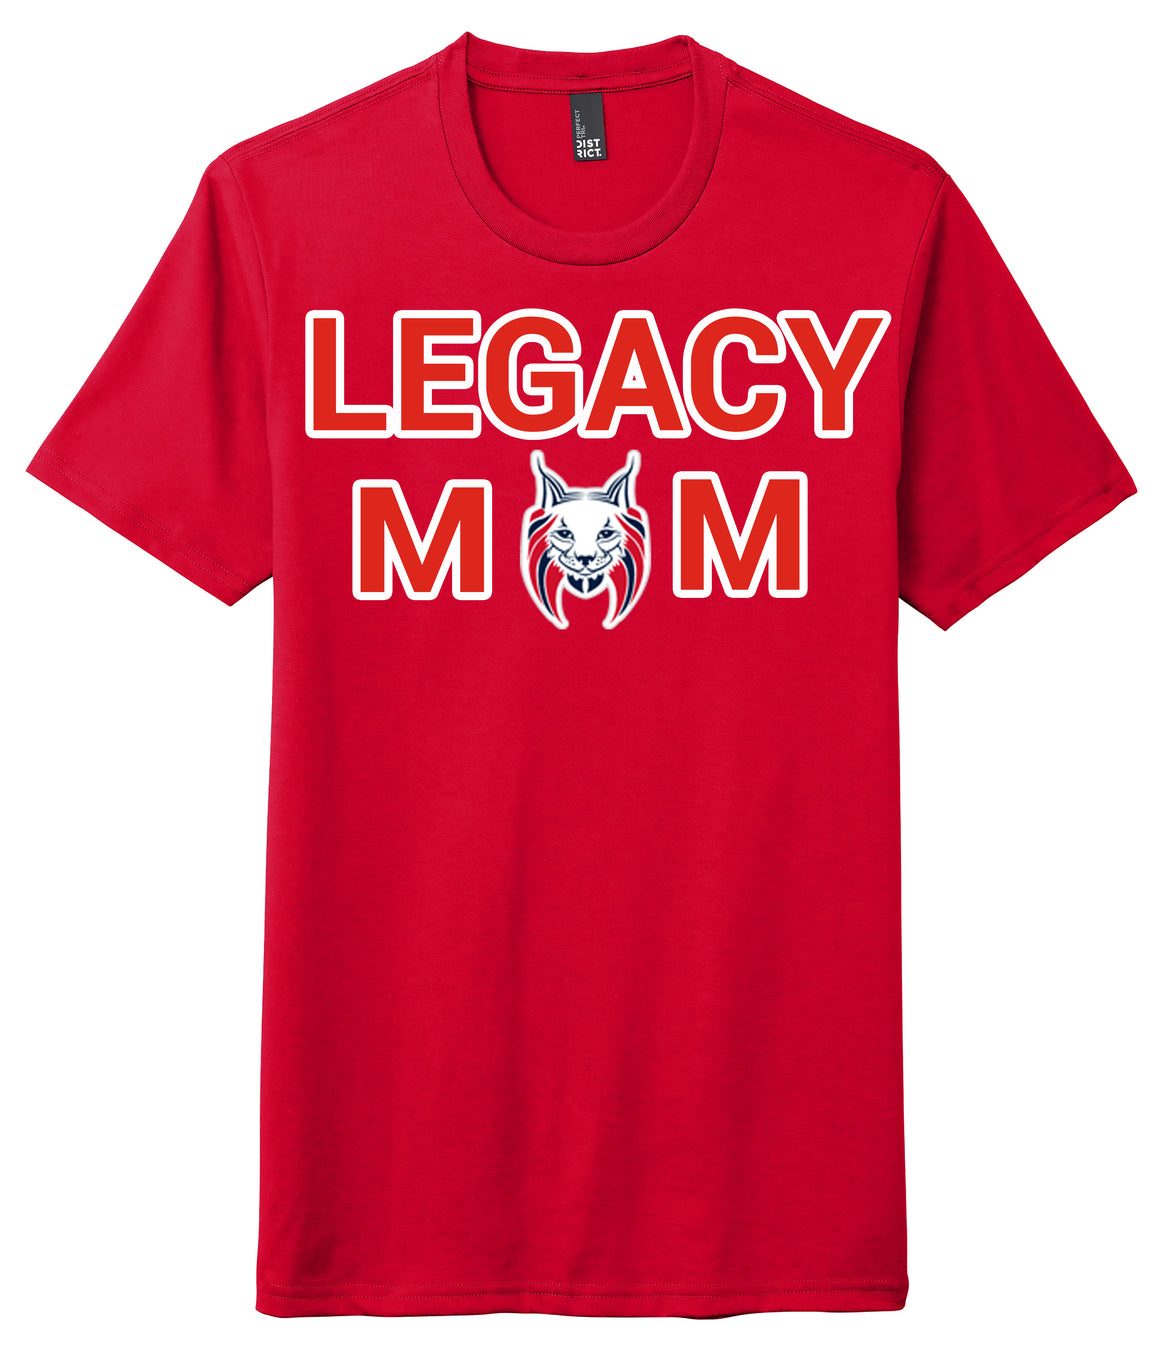 Legacy Traditional School Avondale - Mom Shirt